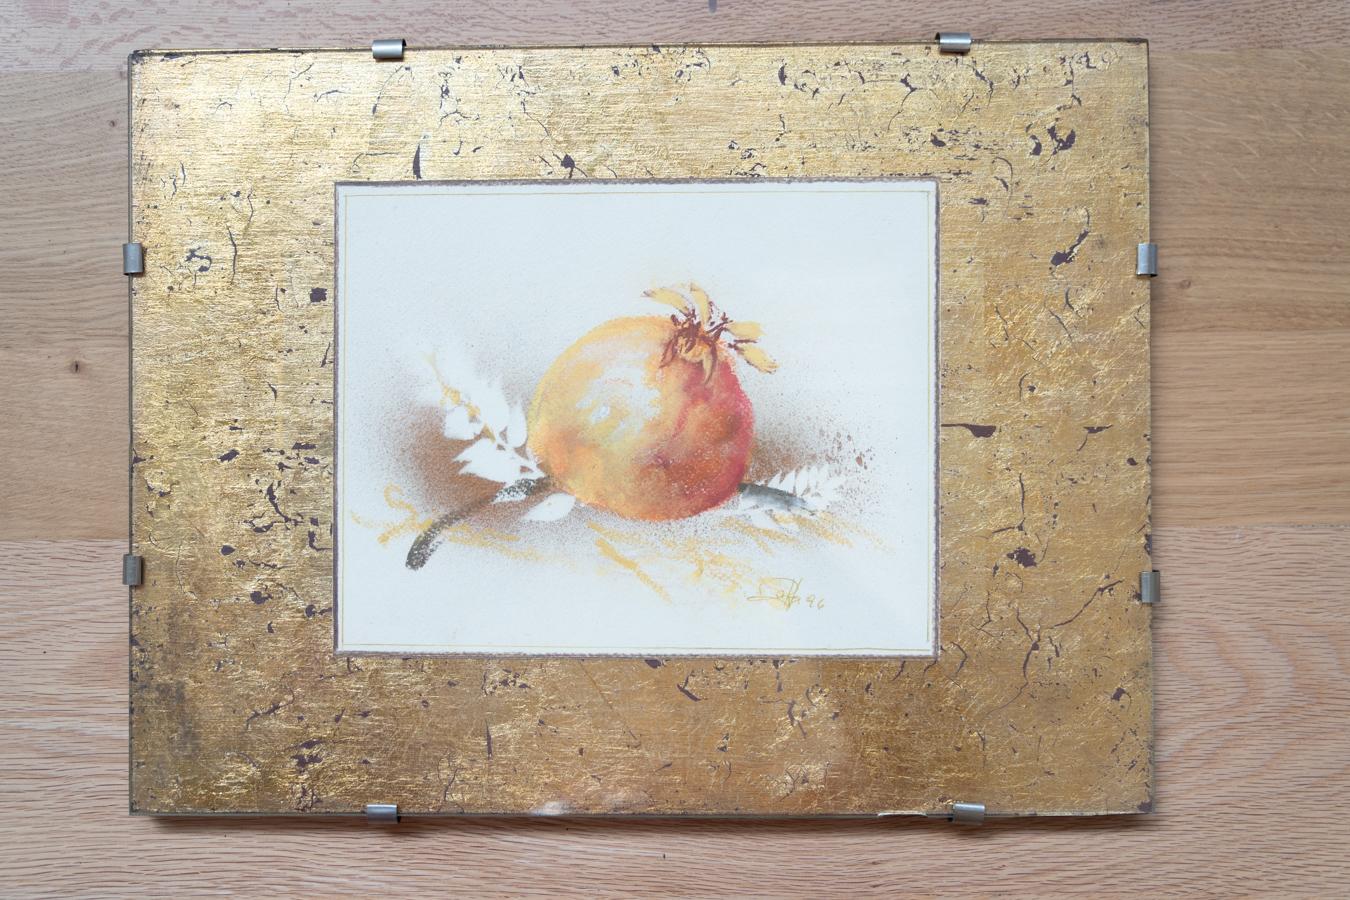 Paire de gravures à l'aquarelle et à la feuille d'or, nature, 1970-1980
COULEUR                                     Orange, marron, noir, jaune, or
MATÉRIAUX                               Verre, bois, feuille d'or
CONDITIONS                         